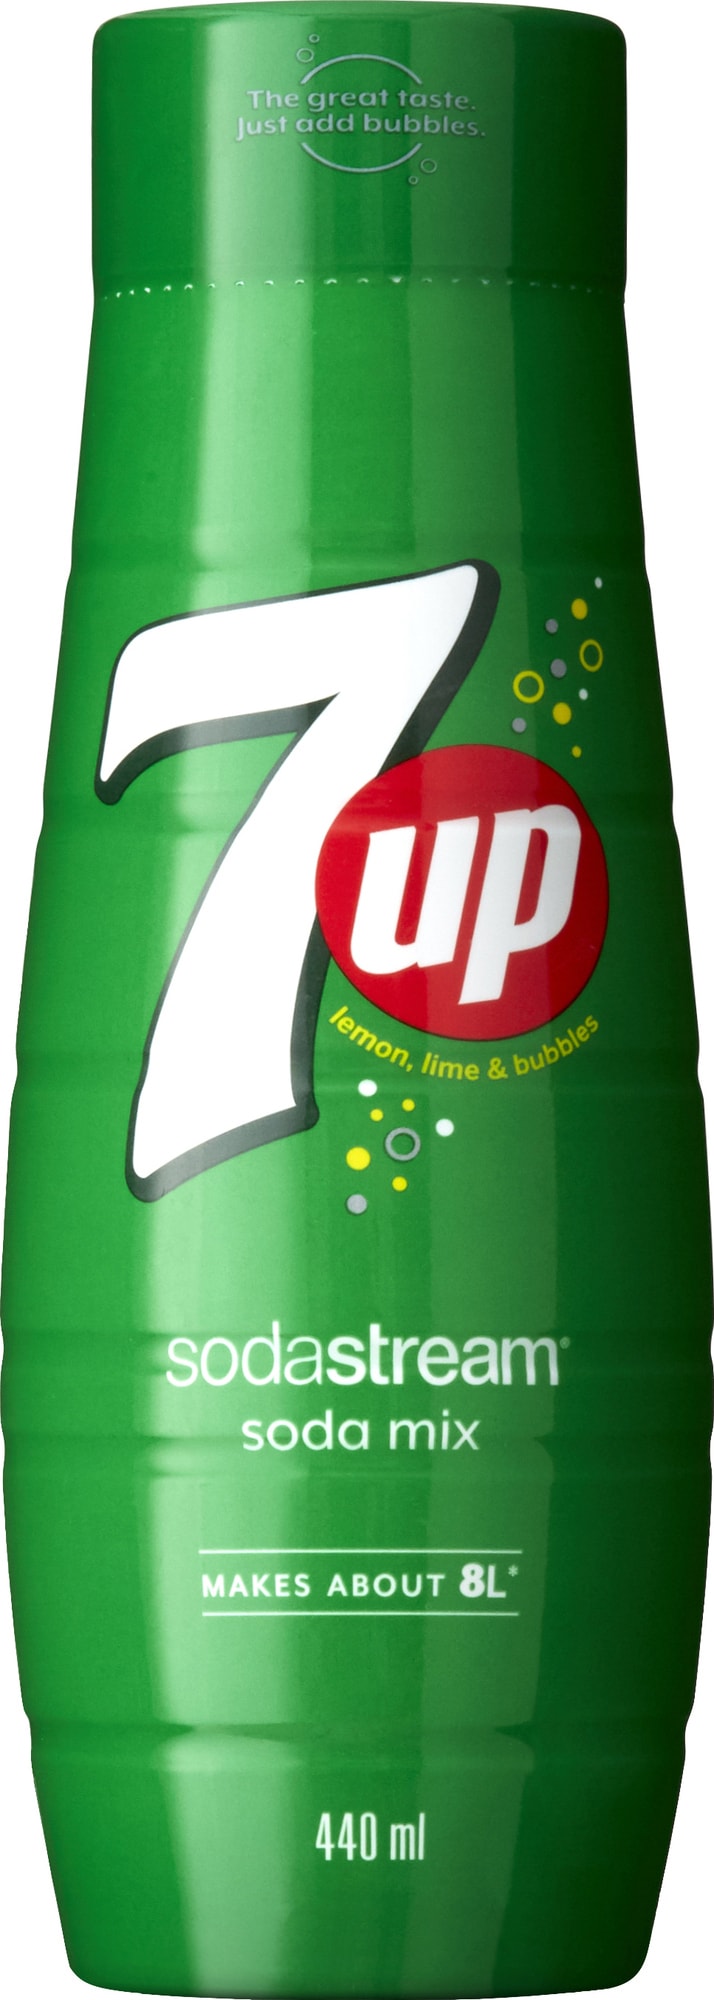 Sodastream 7 UP-smag 1100007770 thumbnail